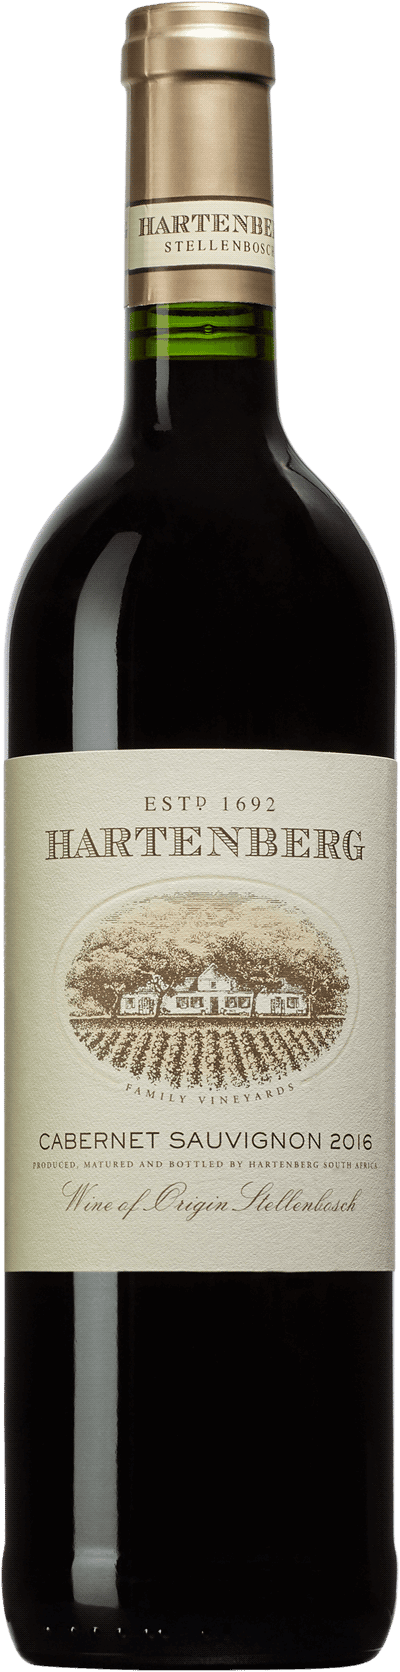 Hartenberg rött vin